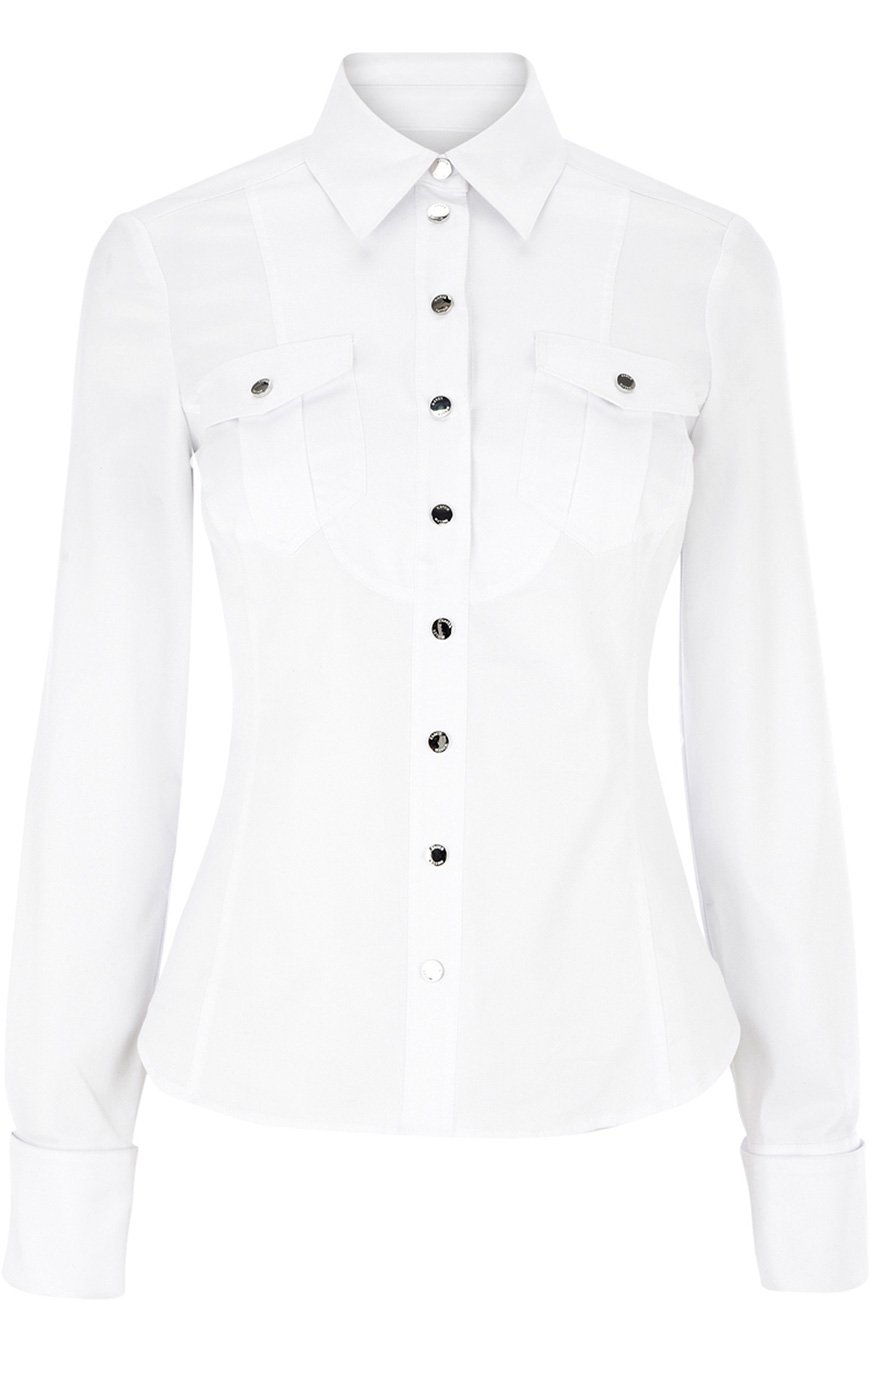 Lyst - Karen Millen Clean White Shirt in White